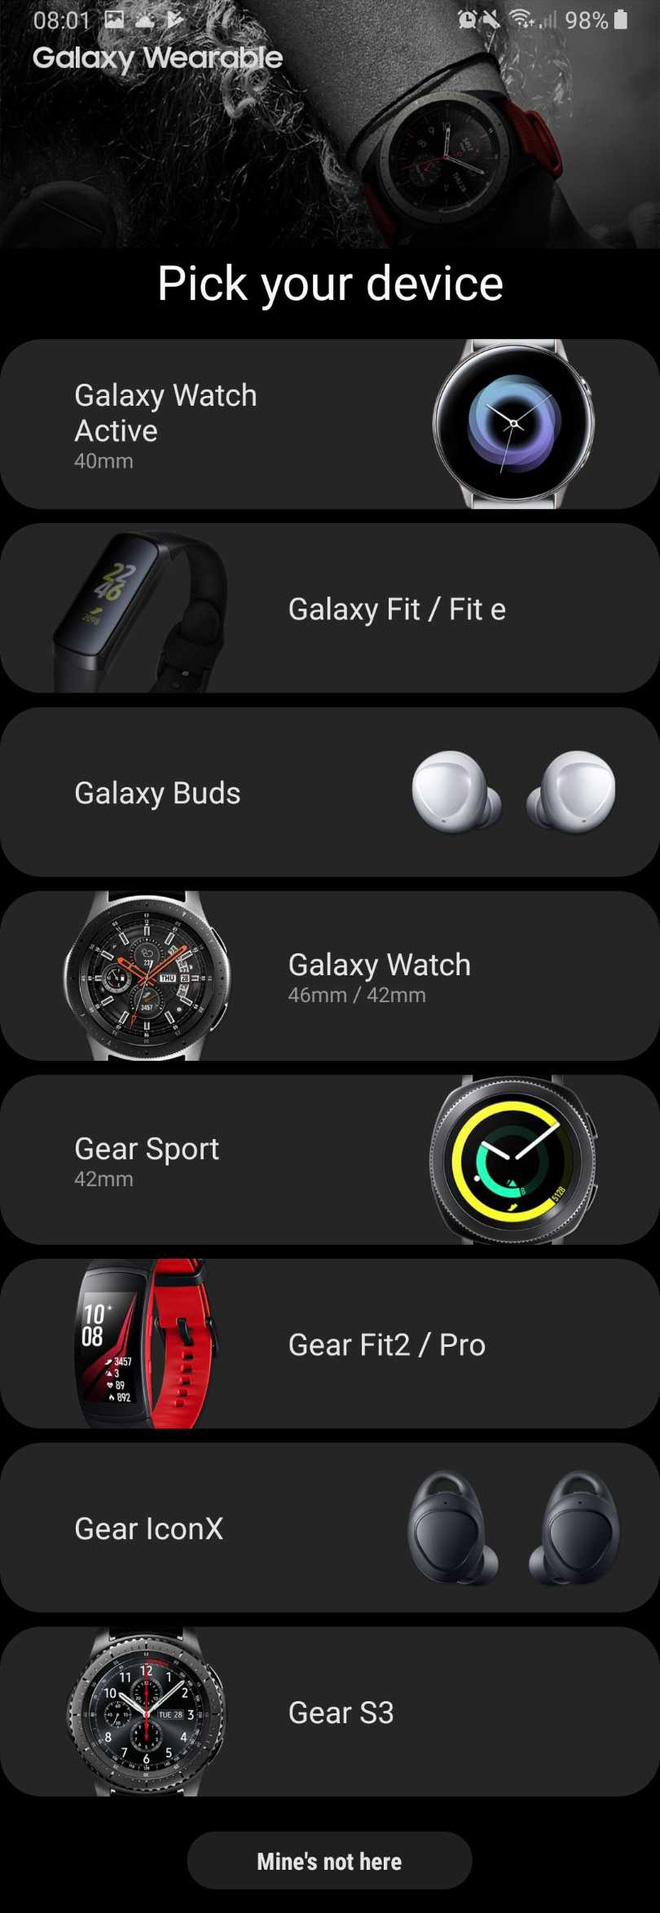 Samsung xác nhận sẽ
ra mắt Galaxy Watch
Active, Galaxy Fit và Galaxy Buds vào ngày 20/2 tới